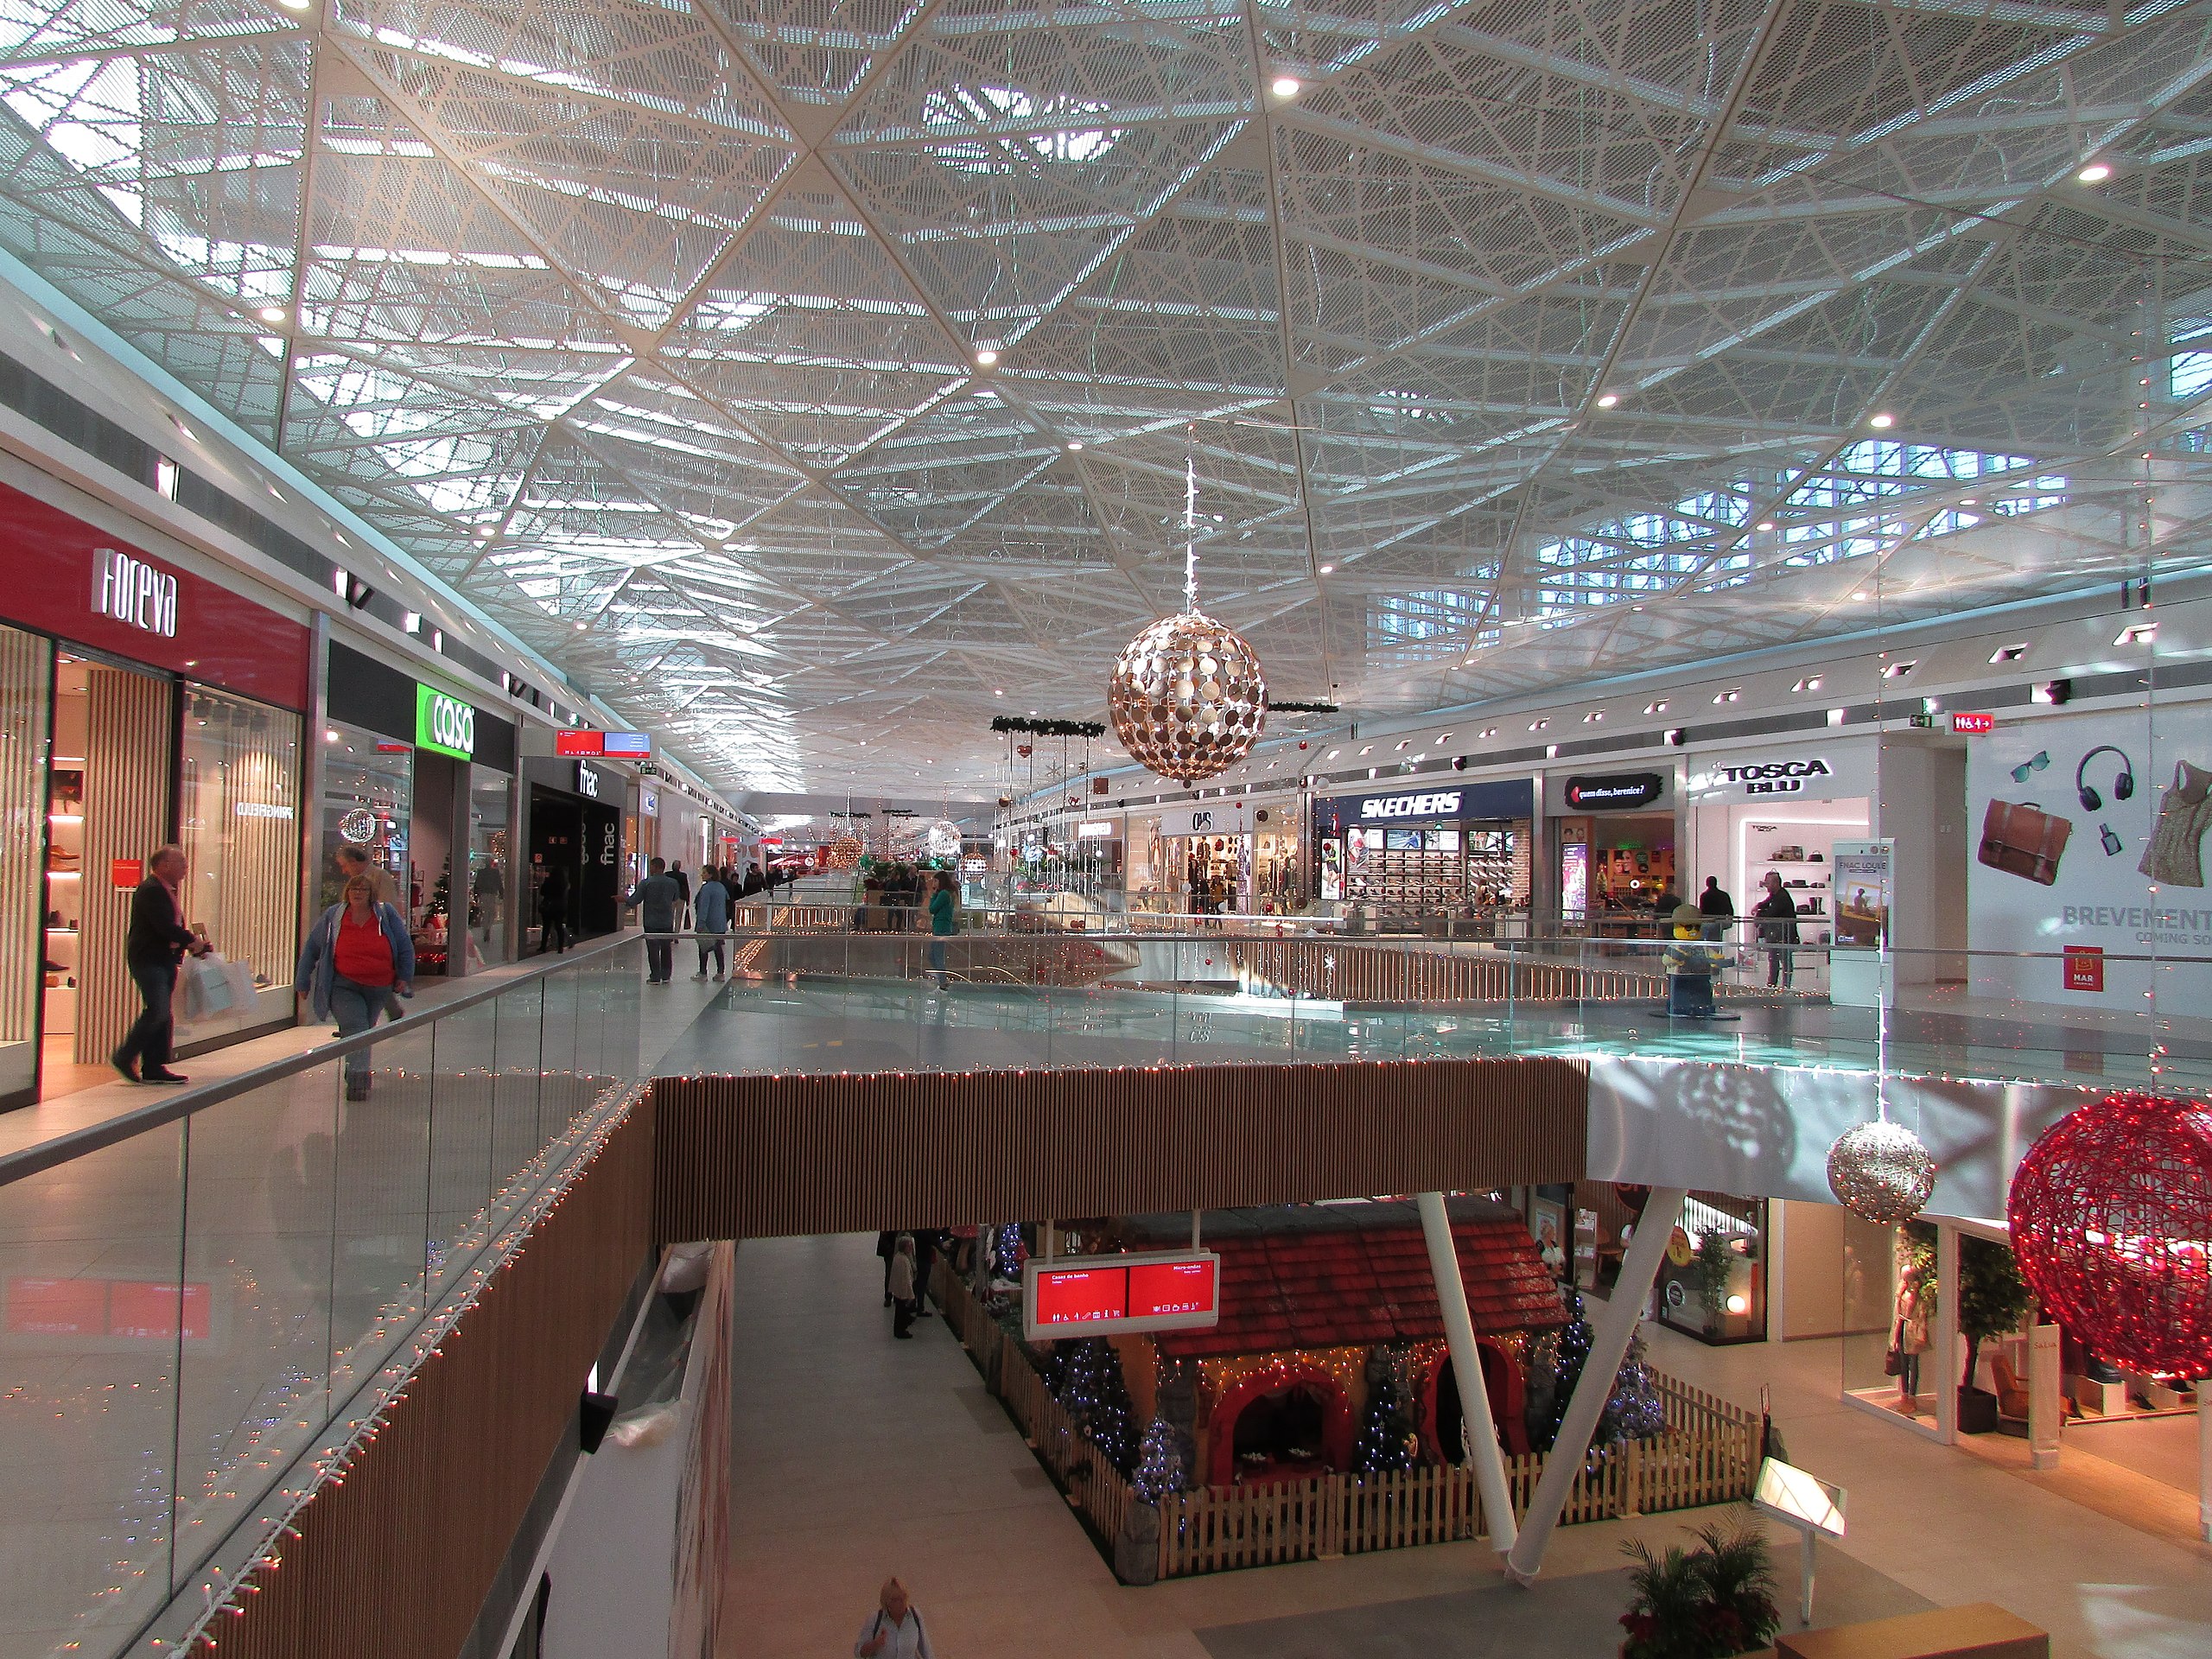 Inside shopping halls MAR Shopping Algarve (6).JPG - Wikimedia Commons